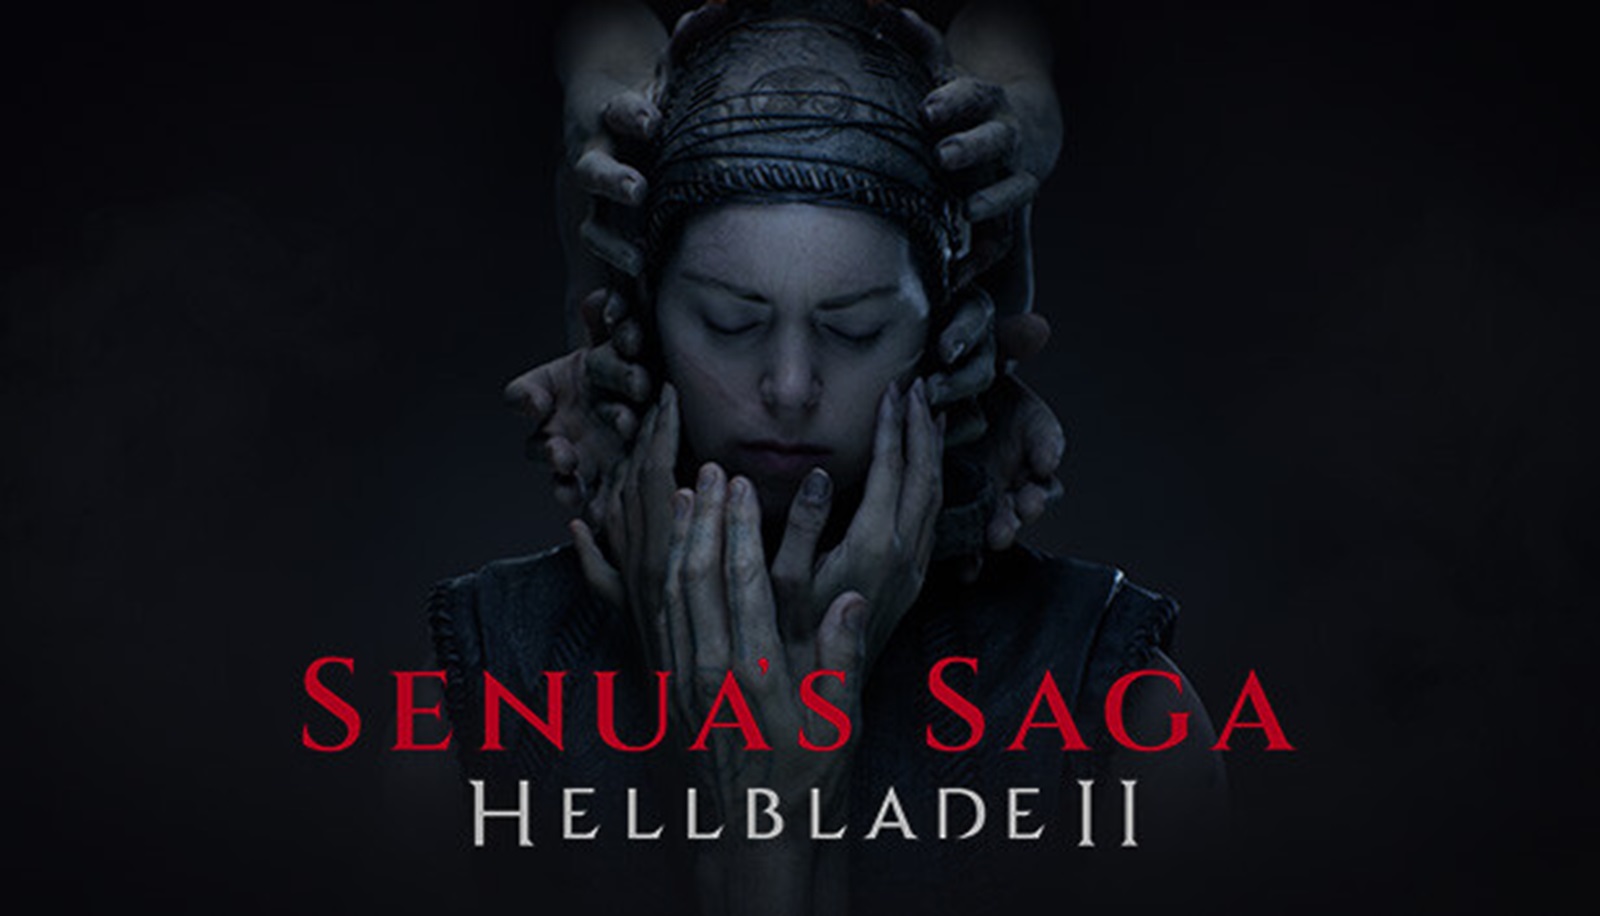 Il nuovo trailer di Senua's Saga: Hellblade II